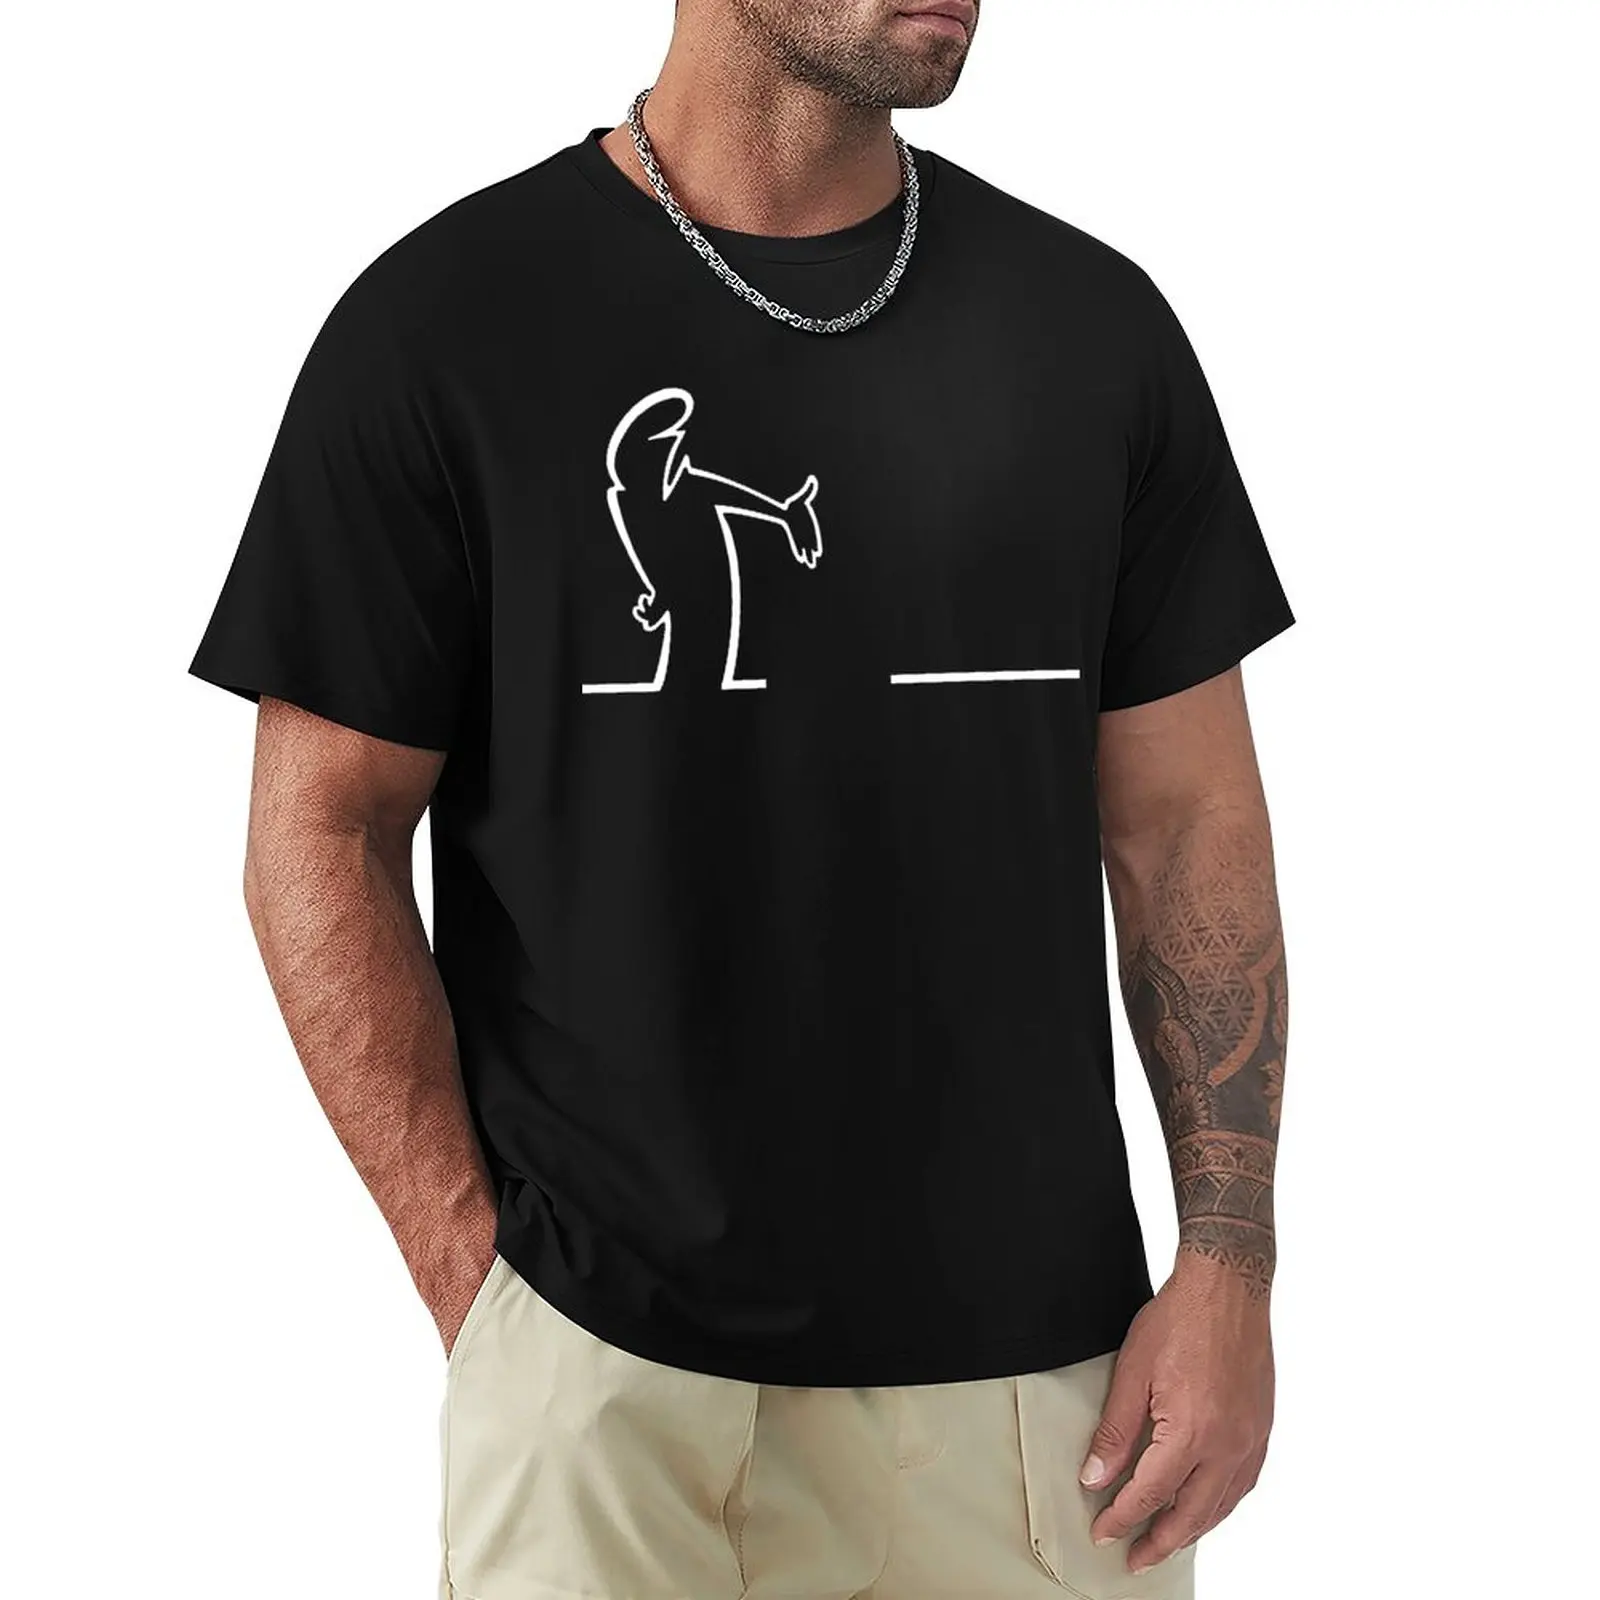 

Модная мужская футболка La Linea, спортивные футболки с веером, футболки, мужские футболки, повседневные топы, мужские футболки с графическим рисунком